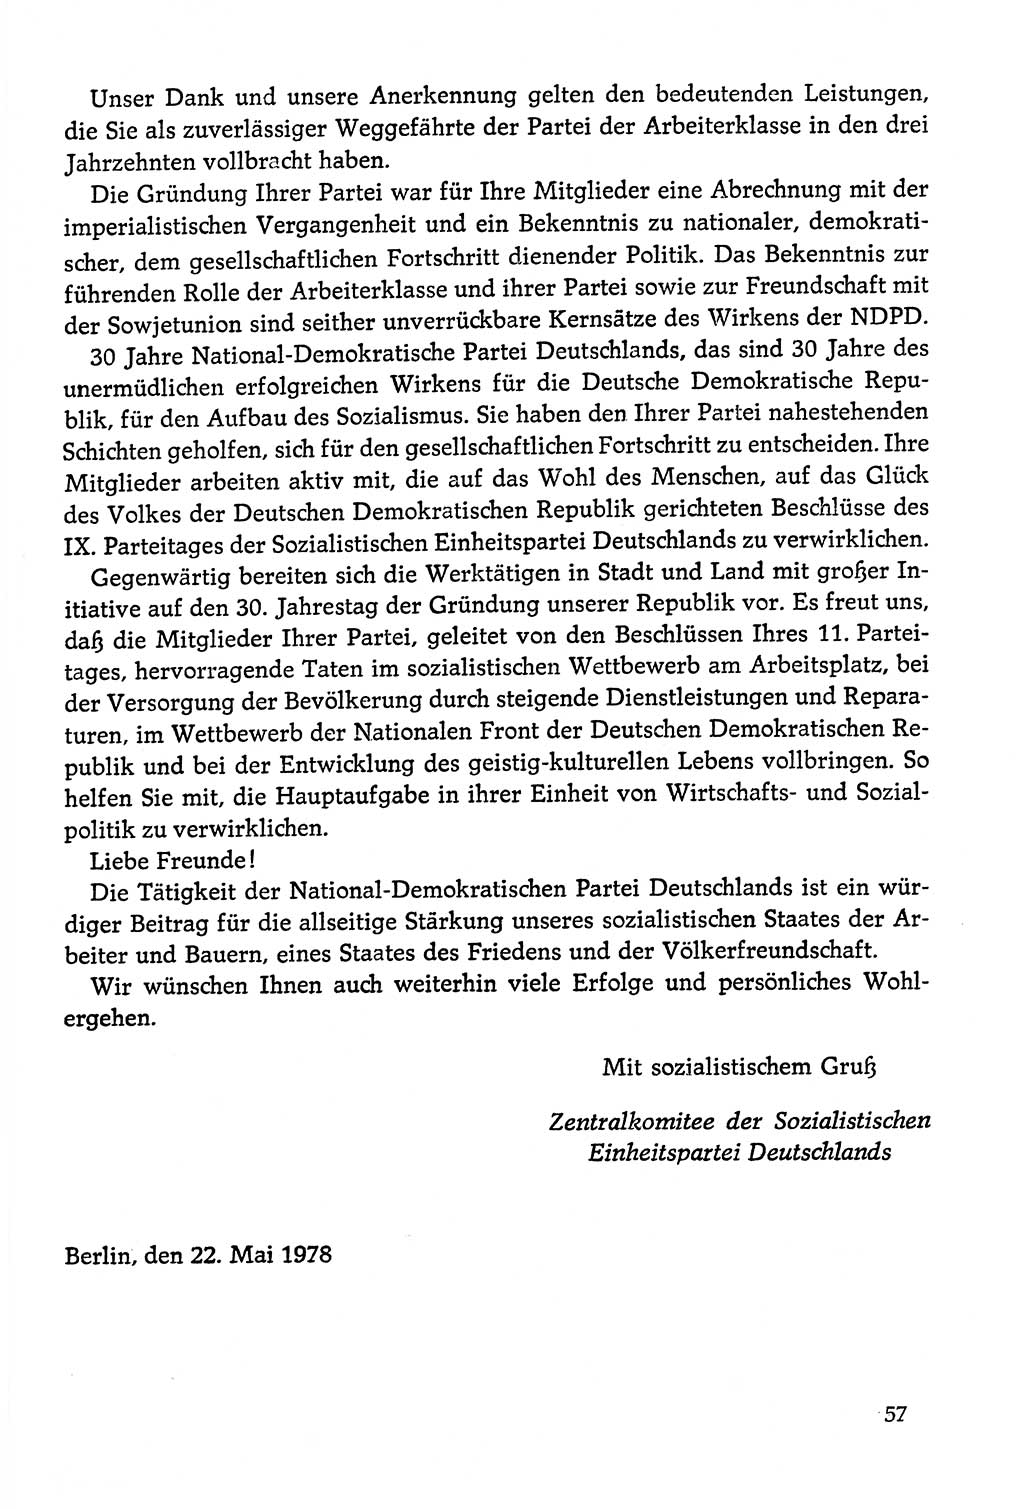 Dokumente der Sozialistischen Einheitspartei Deutschlands (SED) [Deutsche Demokratische Republik (DDR)] 1978-1979, Seite 57 (Dok. SED DDR 1978-1979, S. 57)